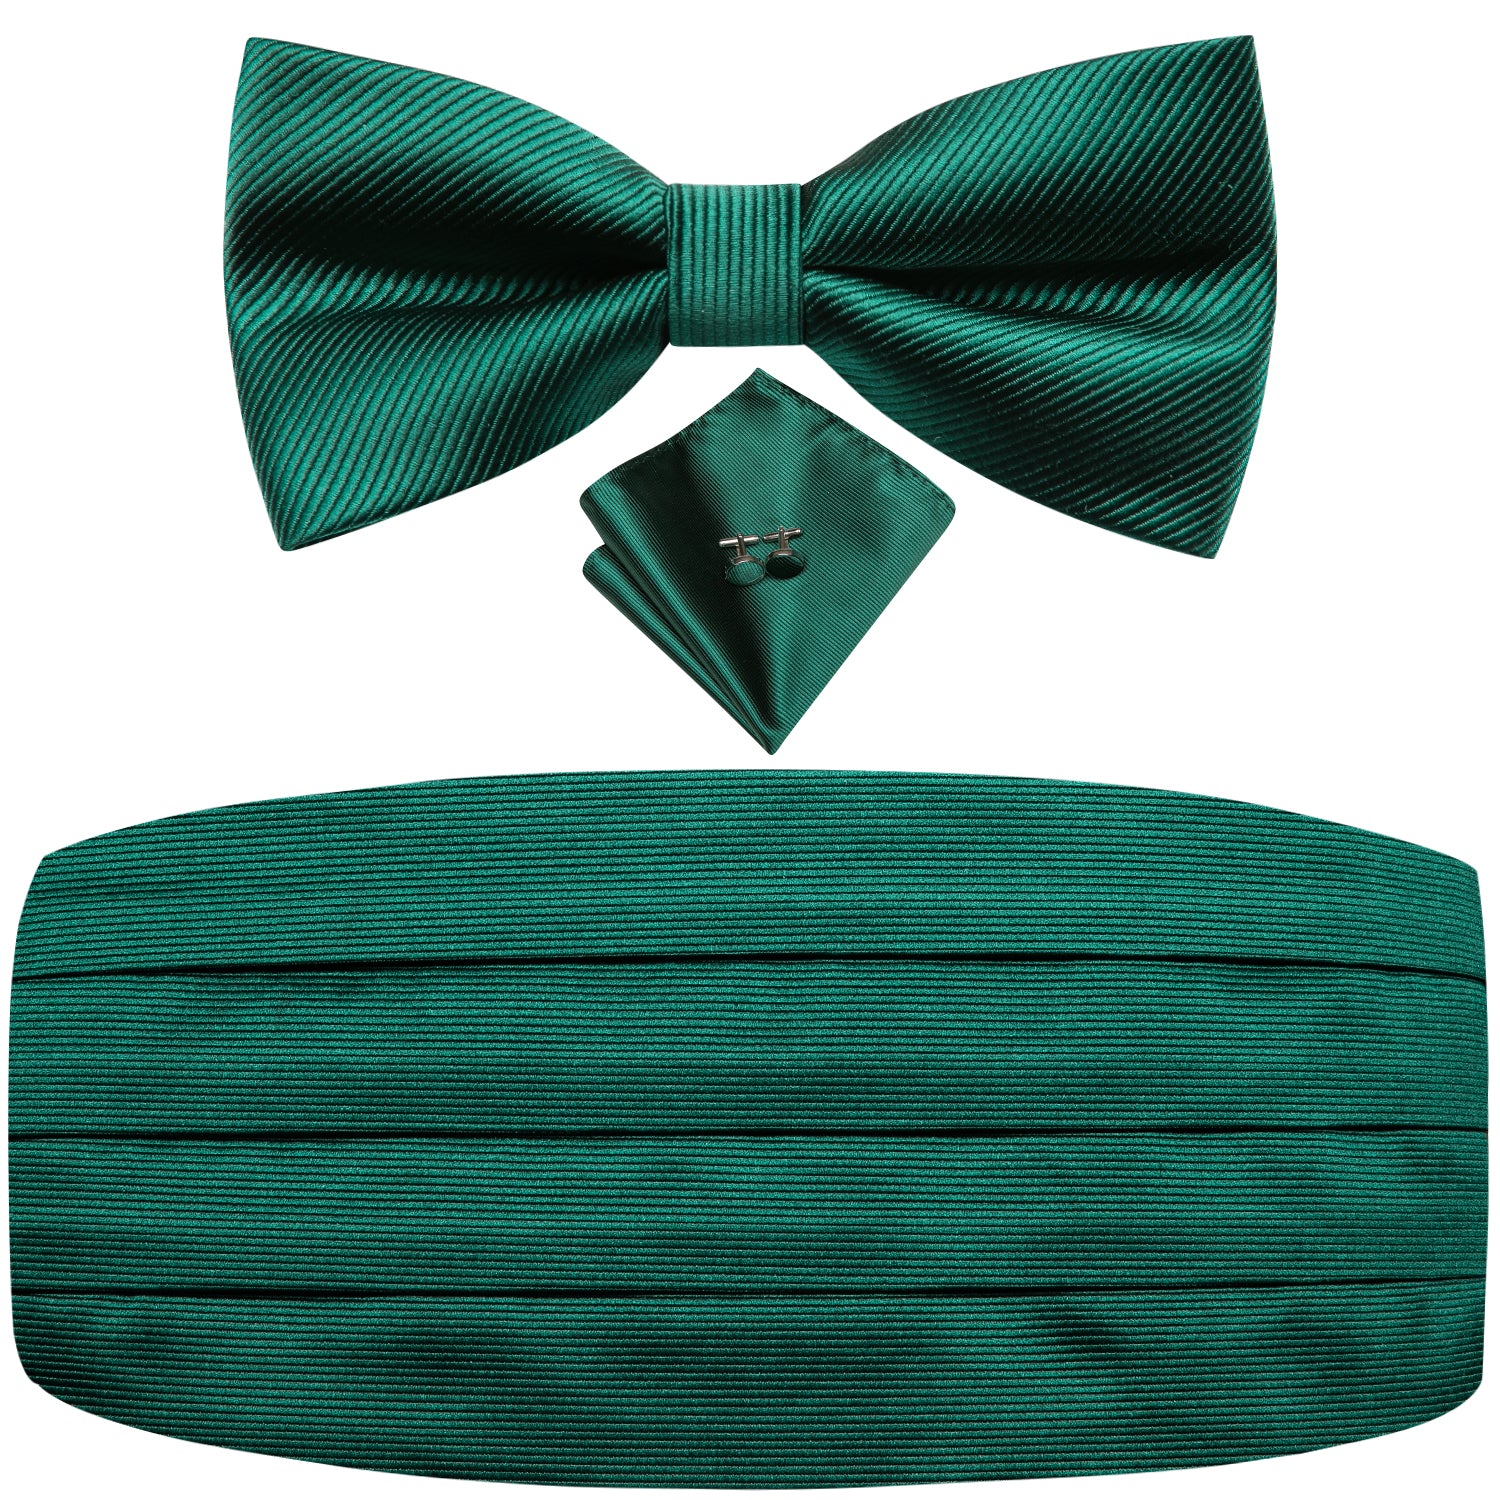 Emerald Green Solid Cummerbund Bow Tie Hanky Cufflinks Set